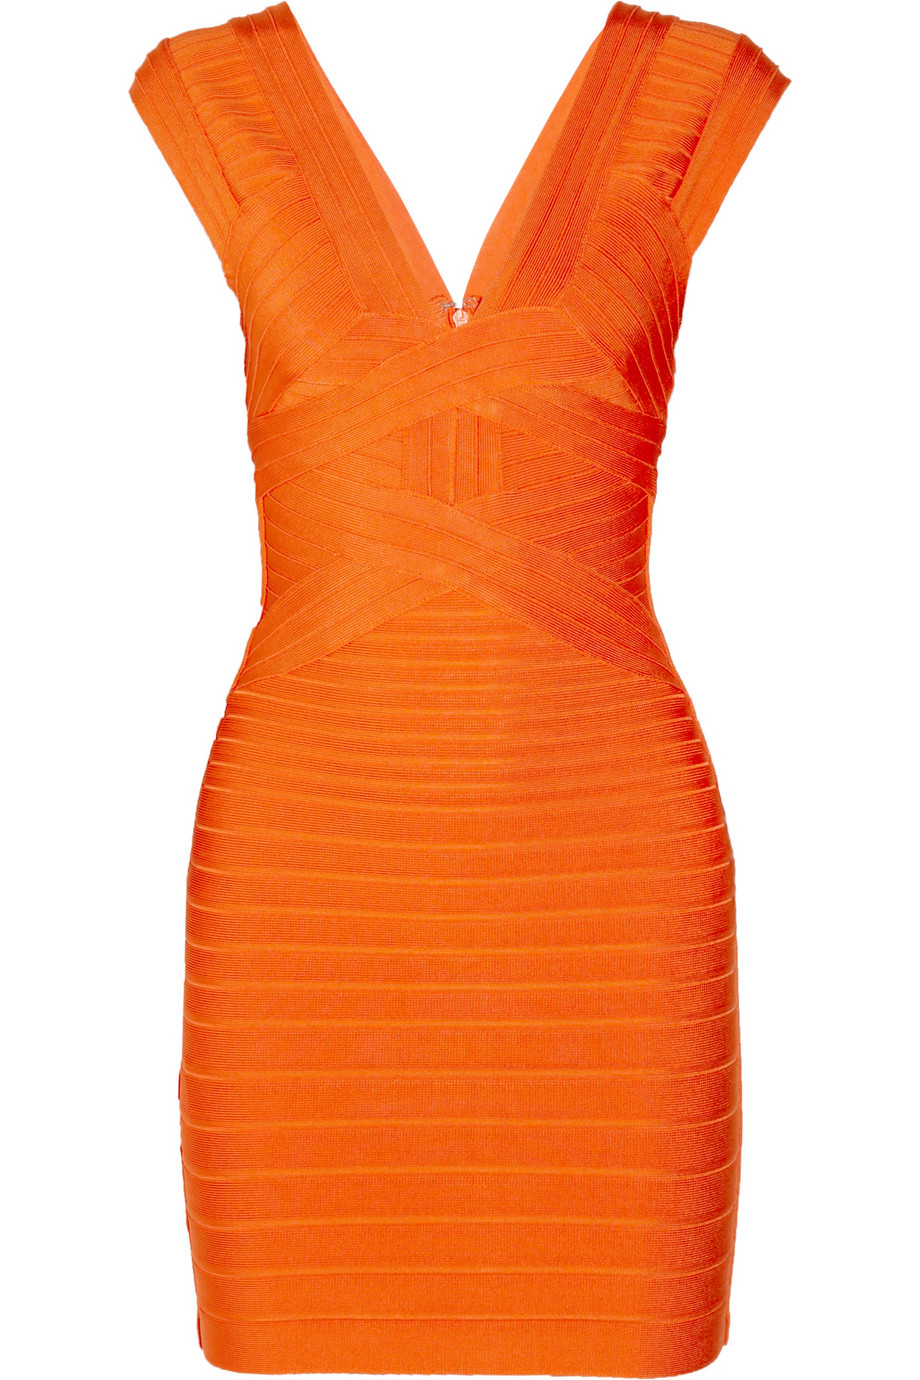 Hervé Léger Bandage Dress in Orange